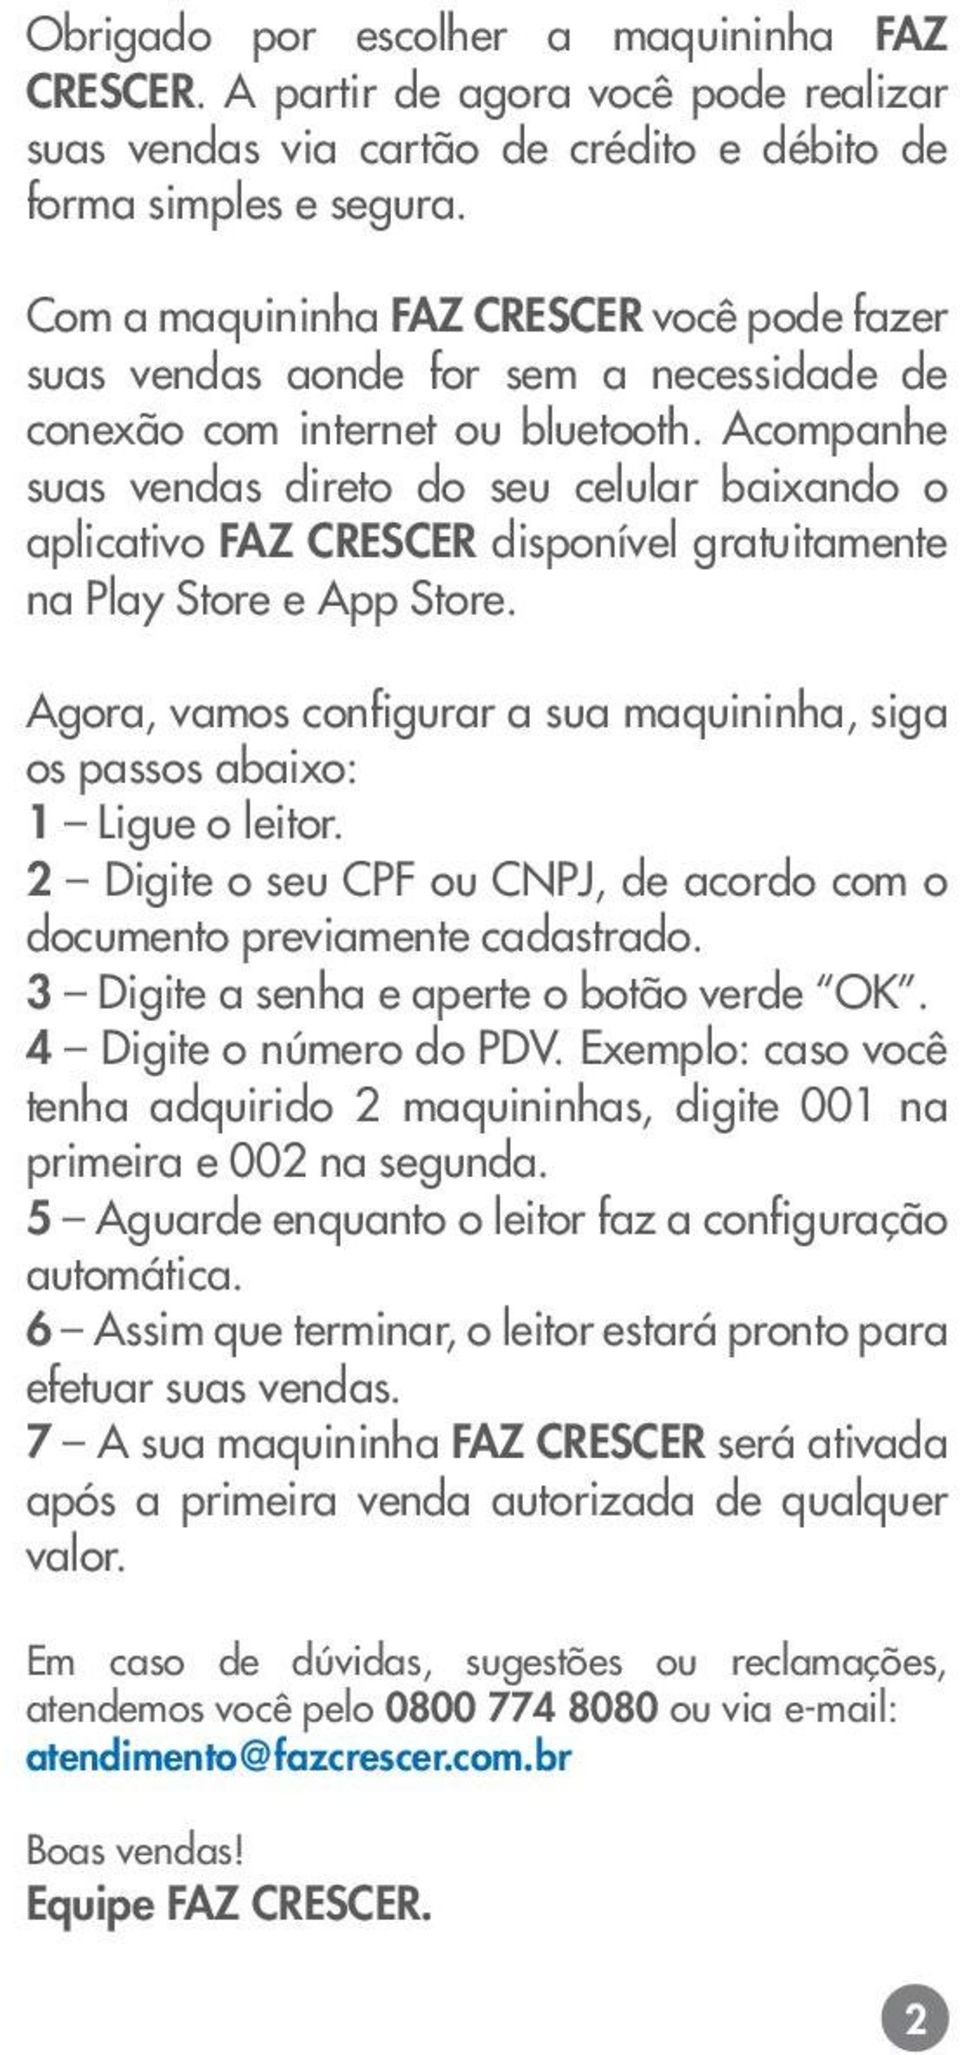 Acompanhe suas vendas direto do seu celular baixando o aplicativo FAZ CRESCER disponível gratuitamente na Play Store e App Store.